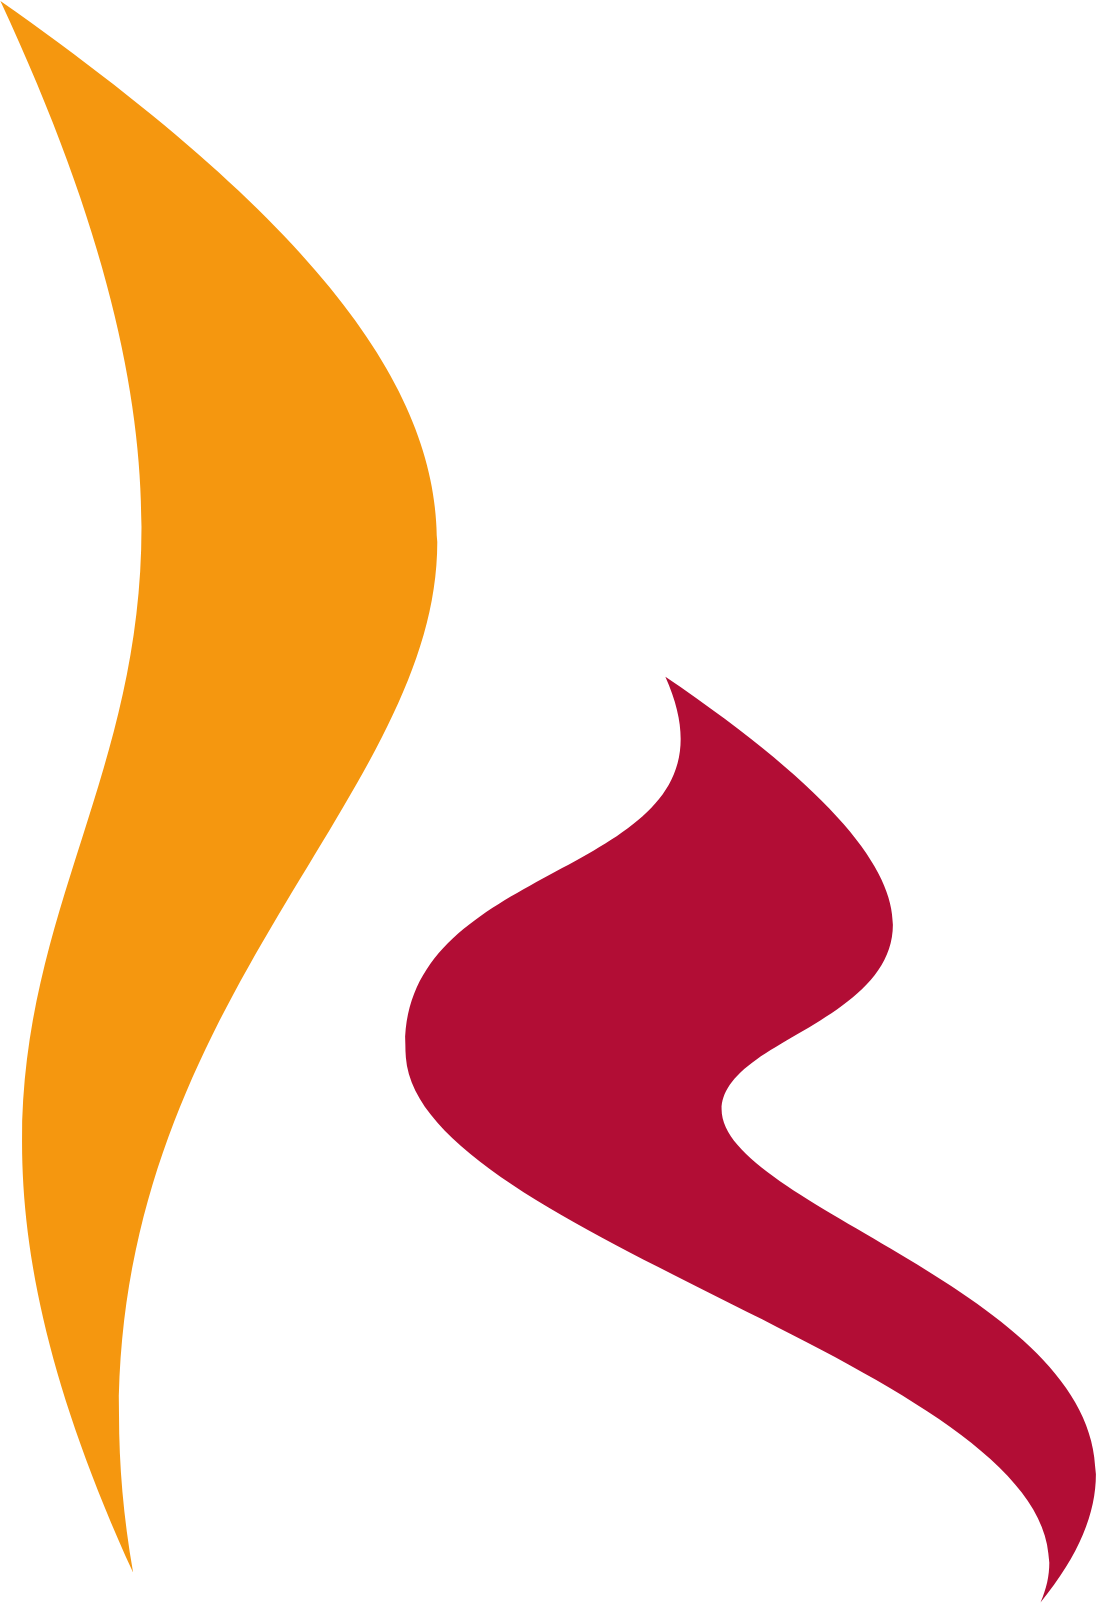 AmRest logo (PNG transparent)